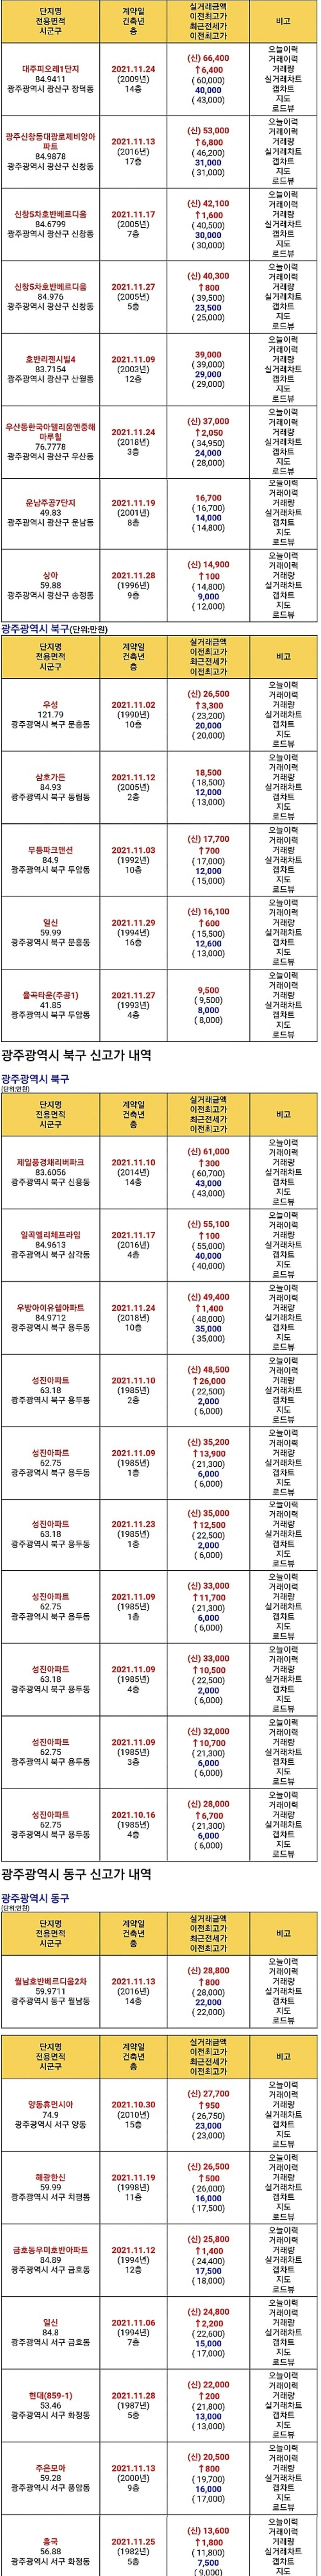 광주광역시 아파트 매매/전세 신고가 내역(2021.11.30)